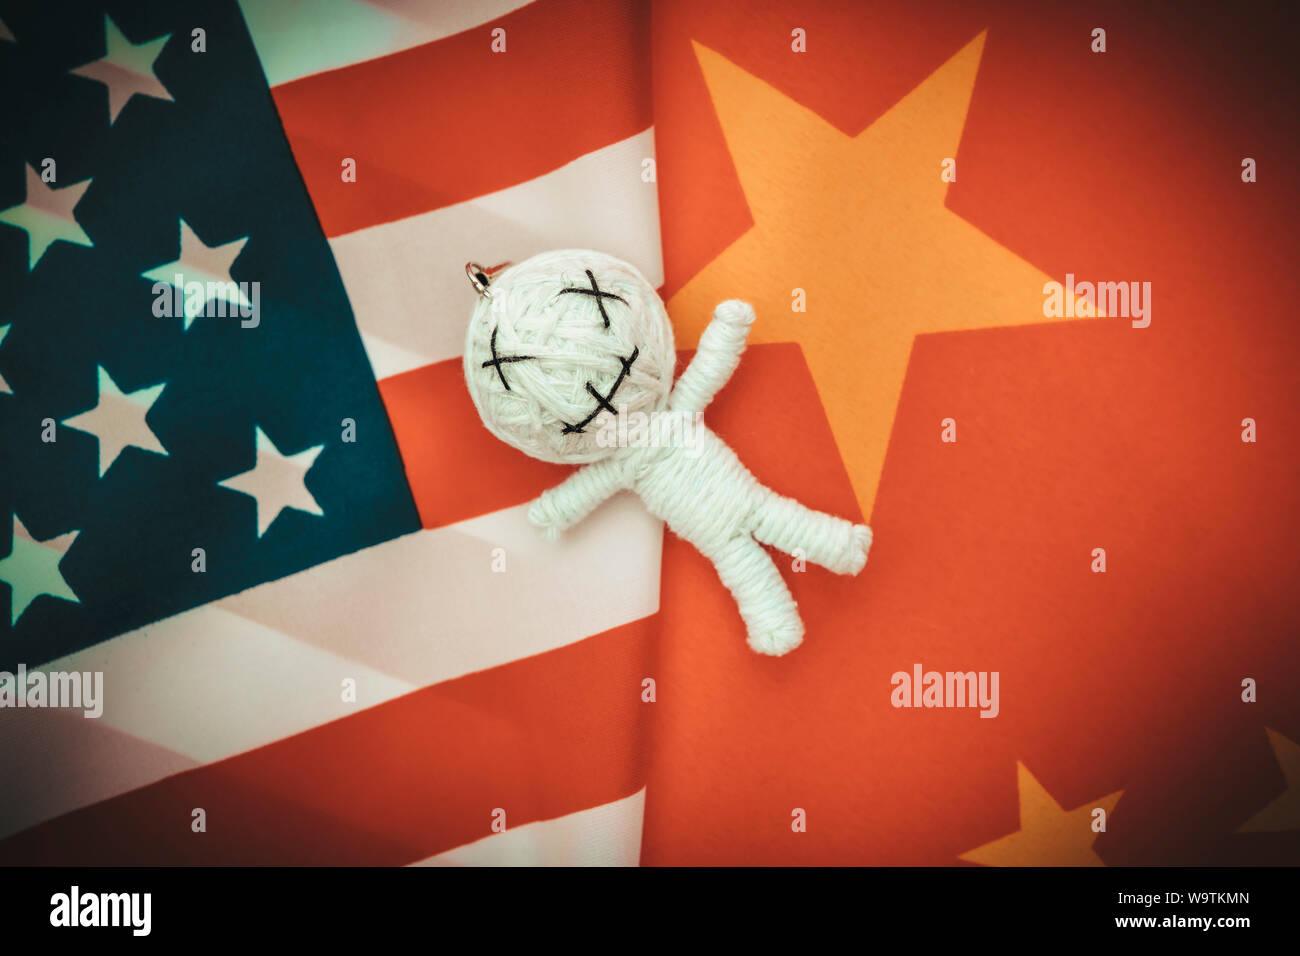 Poupée vaudou sur les drapeaux des USA et de la Chine Banque D'Images